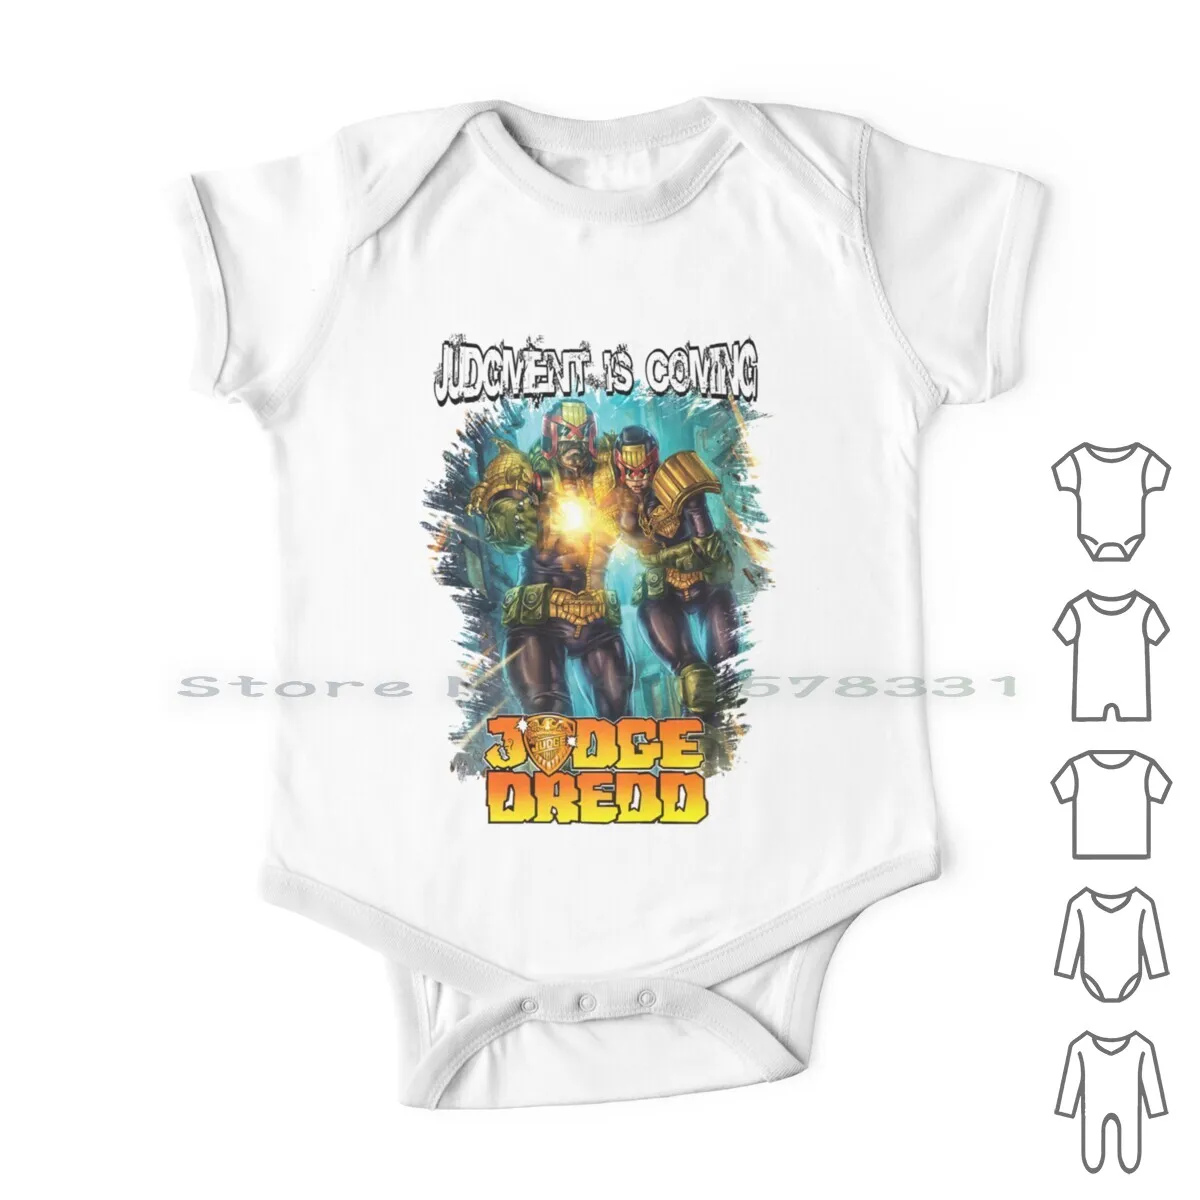 

Комиксы судей Dredd | Идеальный подарок, Одежда для новорожденных, комбинезоны, хлопковые комбинезоны, копы 2000 Ad Mega City, One Law, цитата